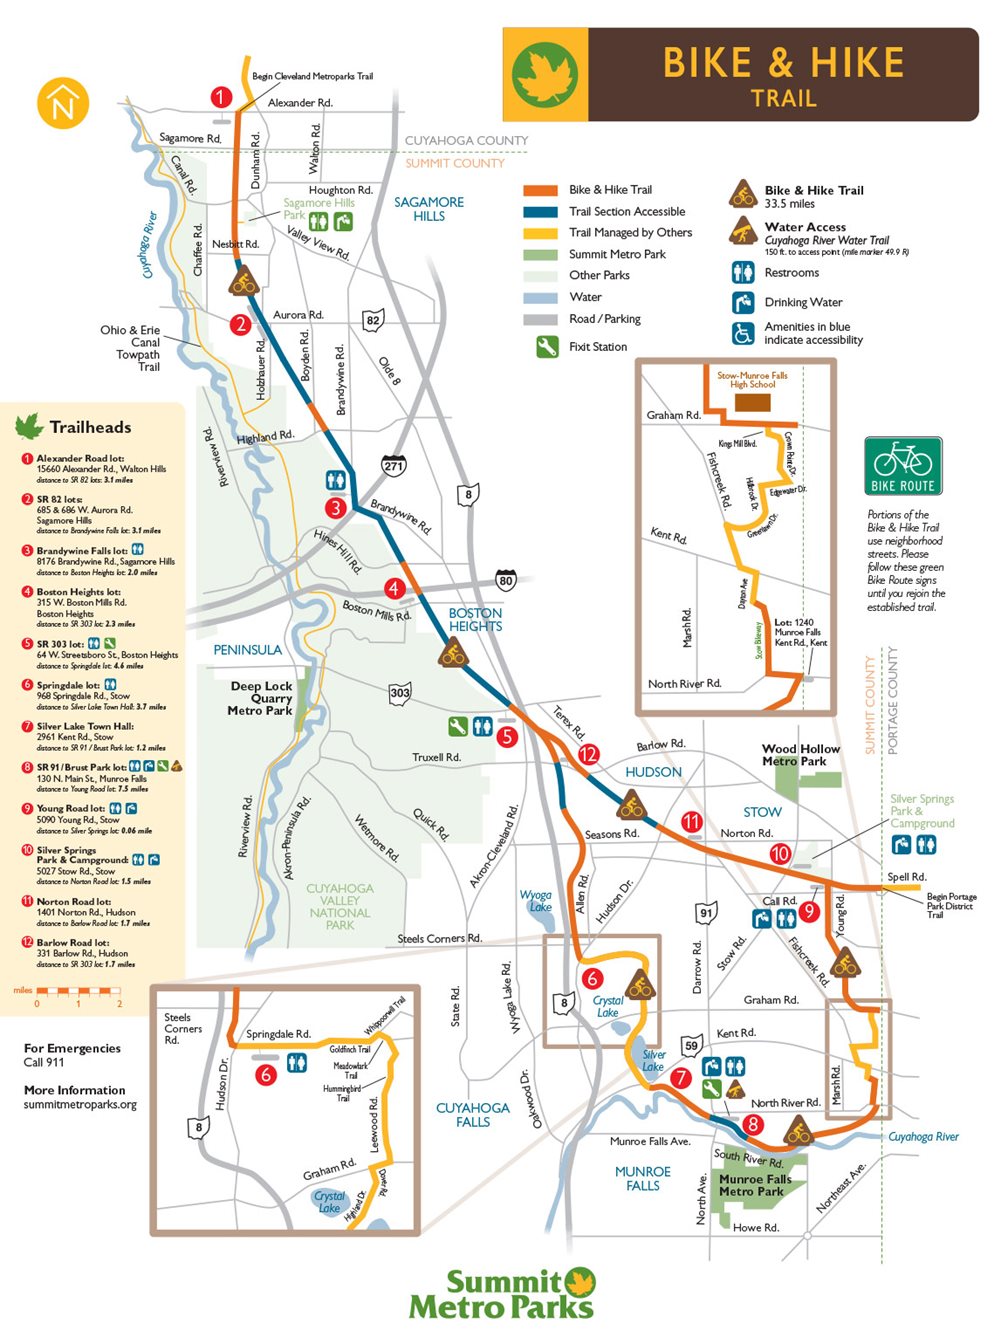 Bike & Hike Trail Map